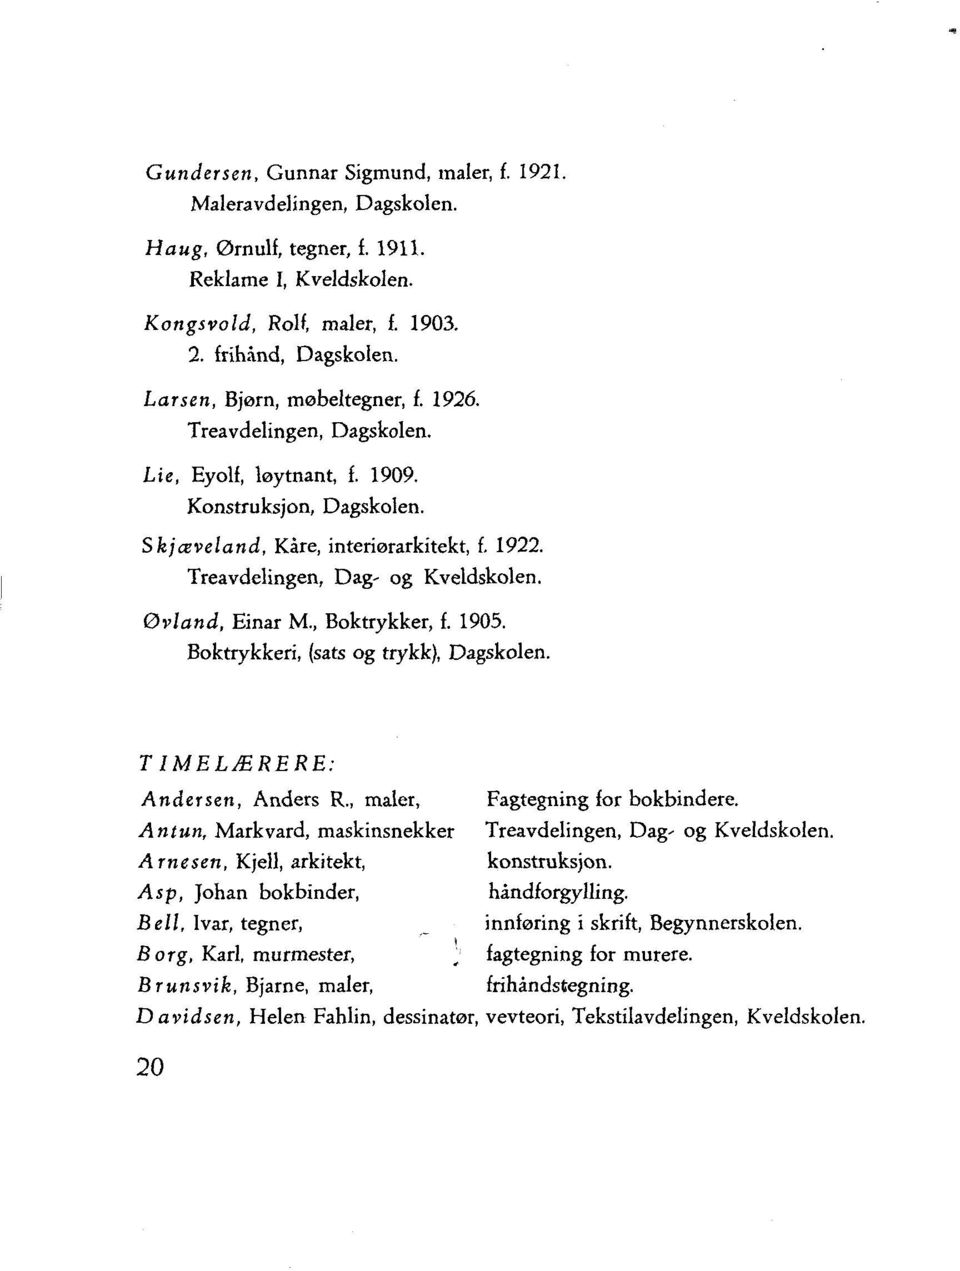 øvland, Einar M., Boktrykker, f. 1905. Boktrykkeri, (sats og trykk), Dagskolen. T IMELÆRERE: Andersen, Anders R., maler, Fagtegning for bokbindere.